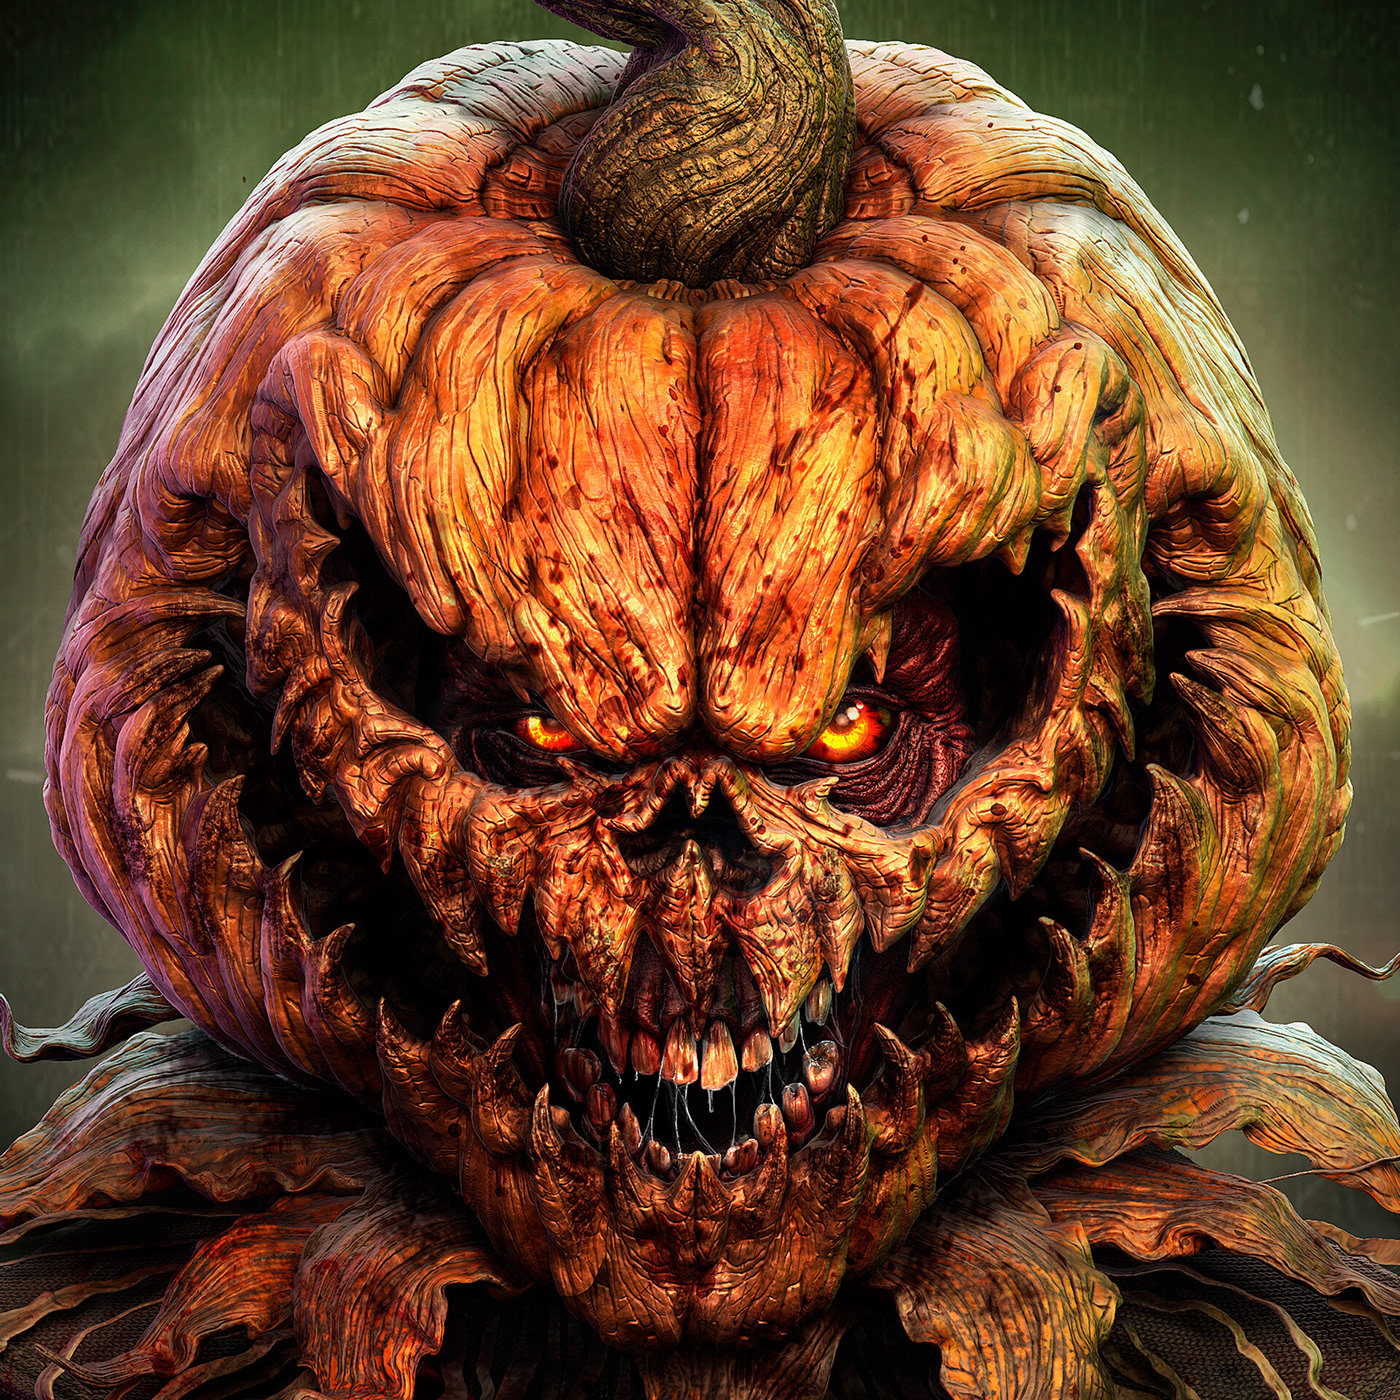 24. PumpkinHead - Halloween. 